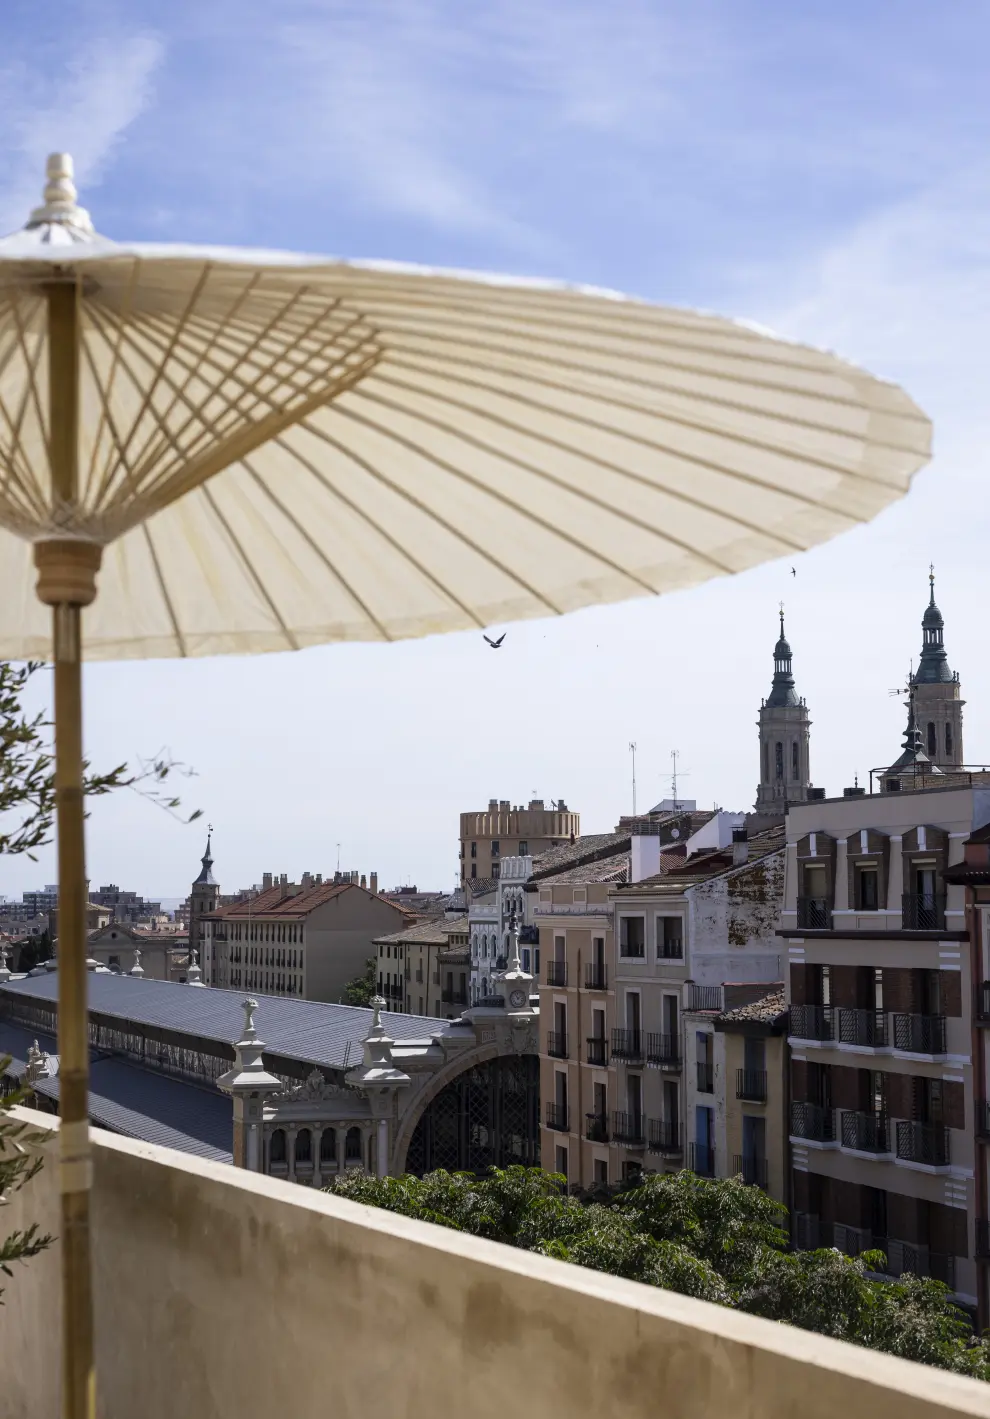 La espectacular terraza del Hotel Avenida de Zaragoza, que abrirá en 15 días para desayunos, brunchs y eventos exclusivos.